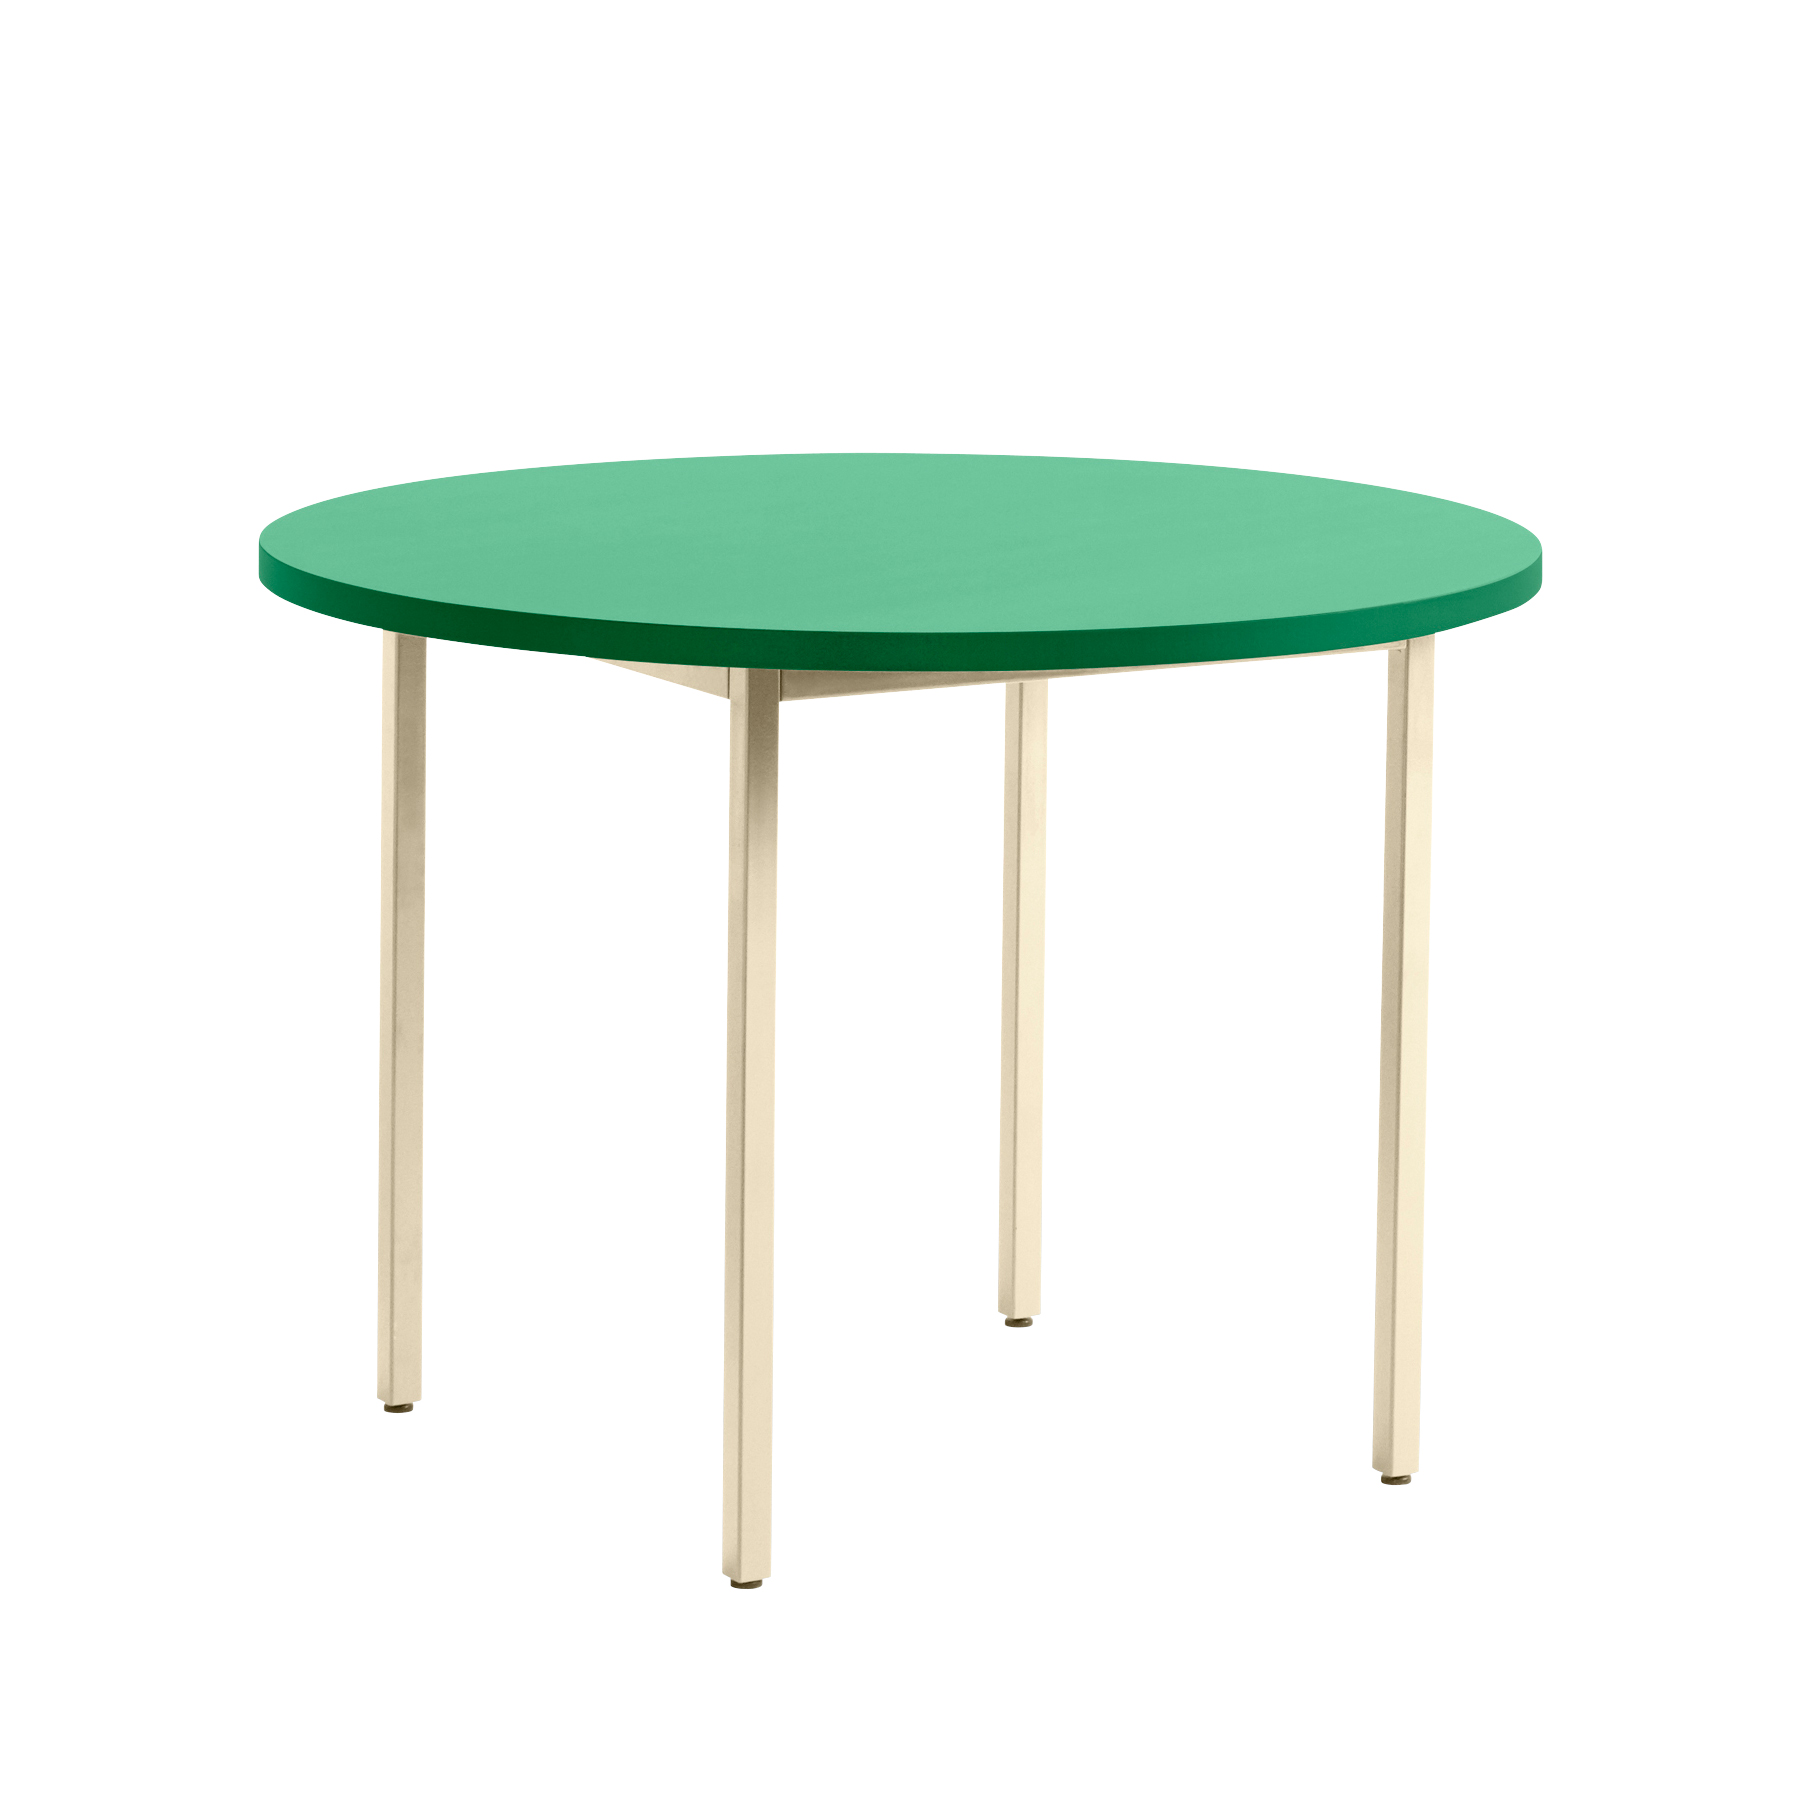 HAY - Two-Colour Esstisch Gestell Elfenbein Ø105cm - grün, elfenbein/Tischplatte Valchromat wasserbasiert lackiert/Gestell Stahl pulverbeschichtet/HxØ von HAY